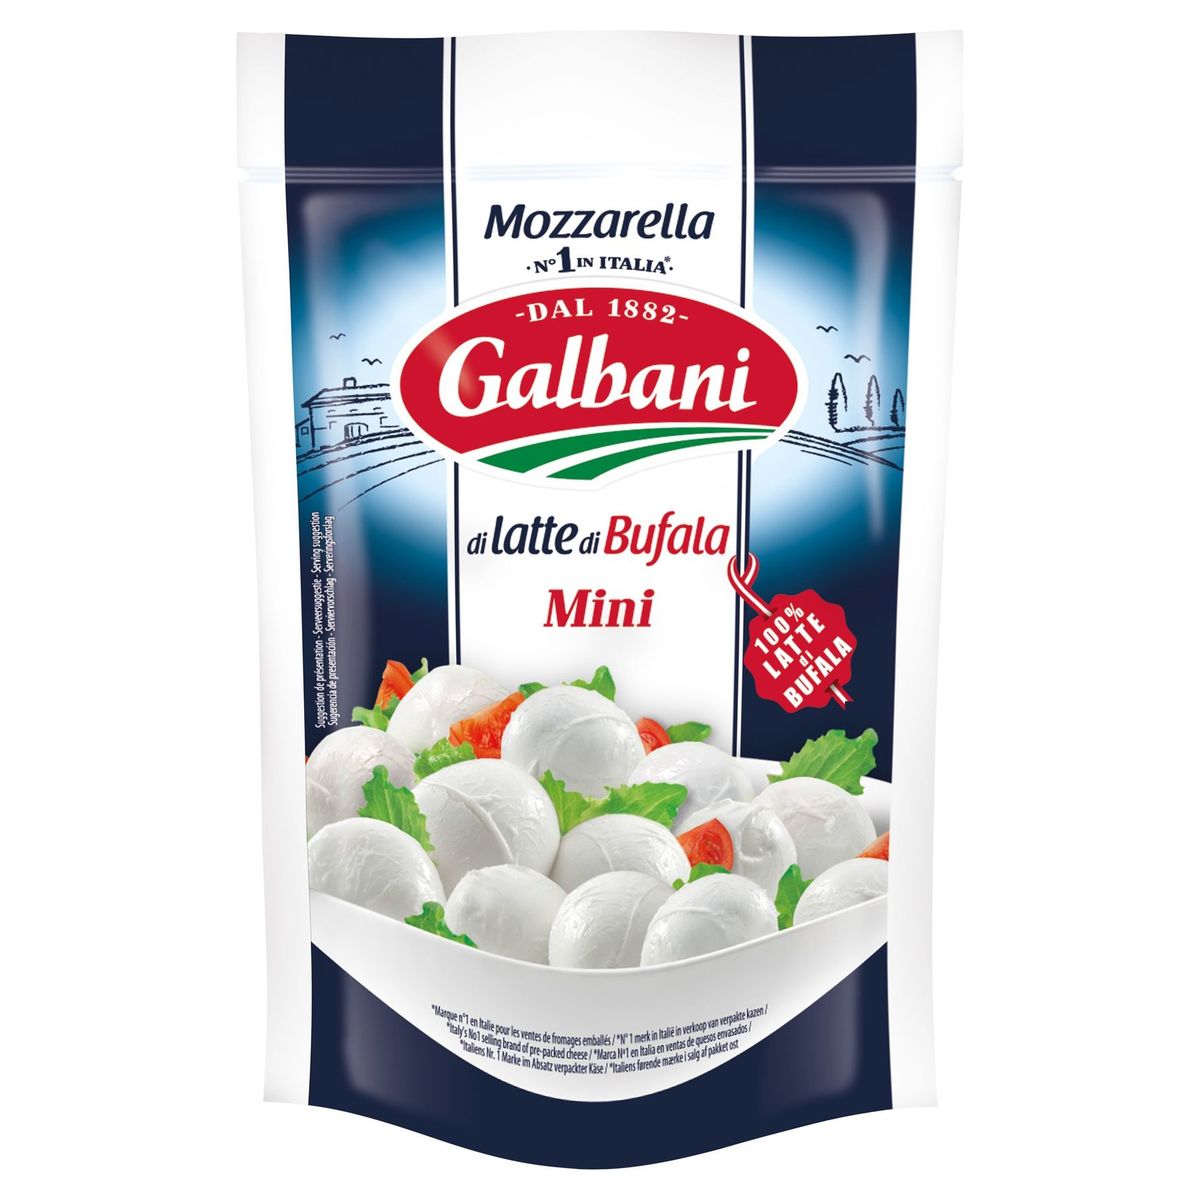 Galbani - Mini Mozzarella di Latte di Bufala Doypack 150 g